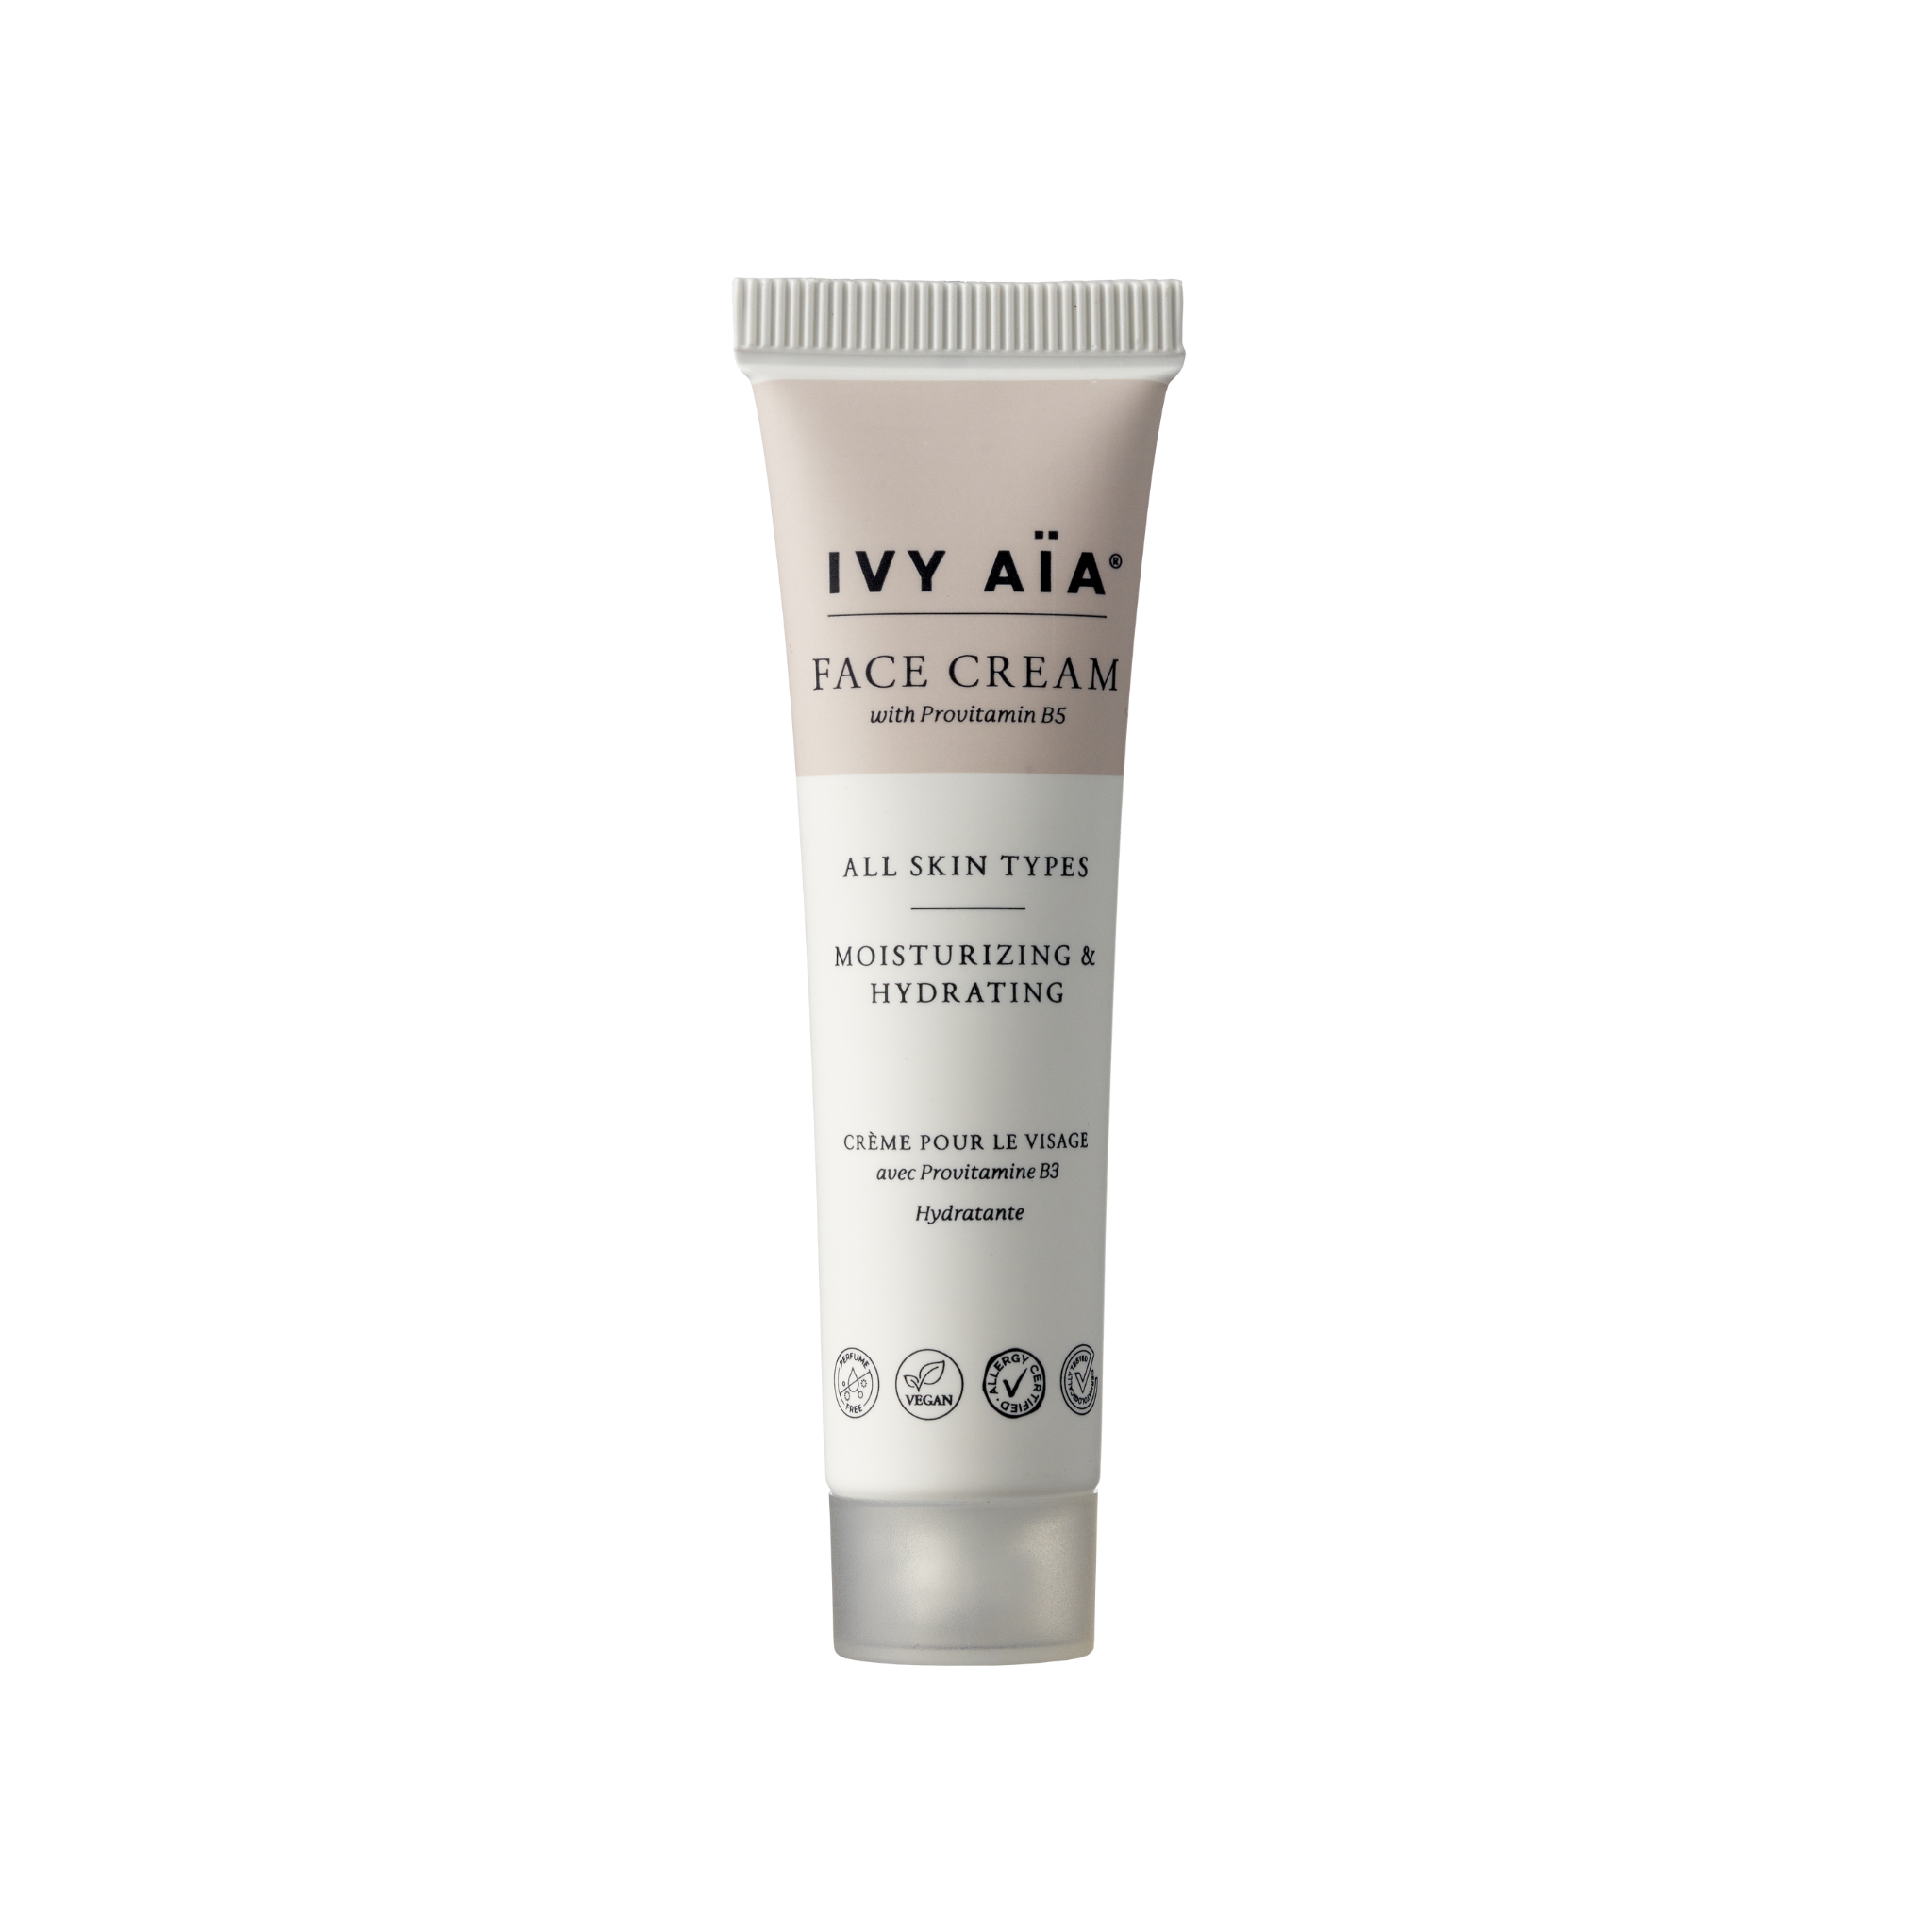 IVY AïA Gesichtscreme mit Provitamin B5, Reisegröße, 15 ml.